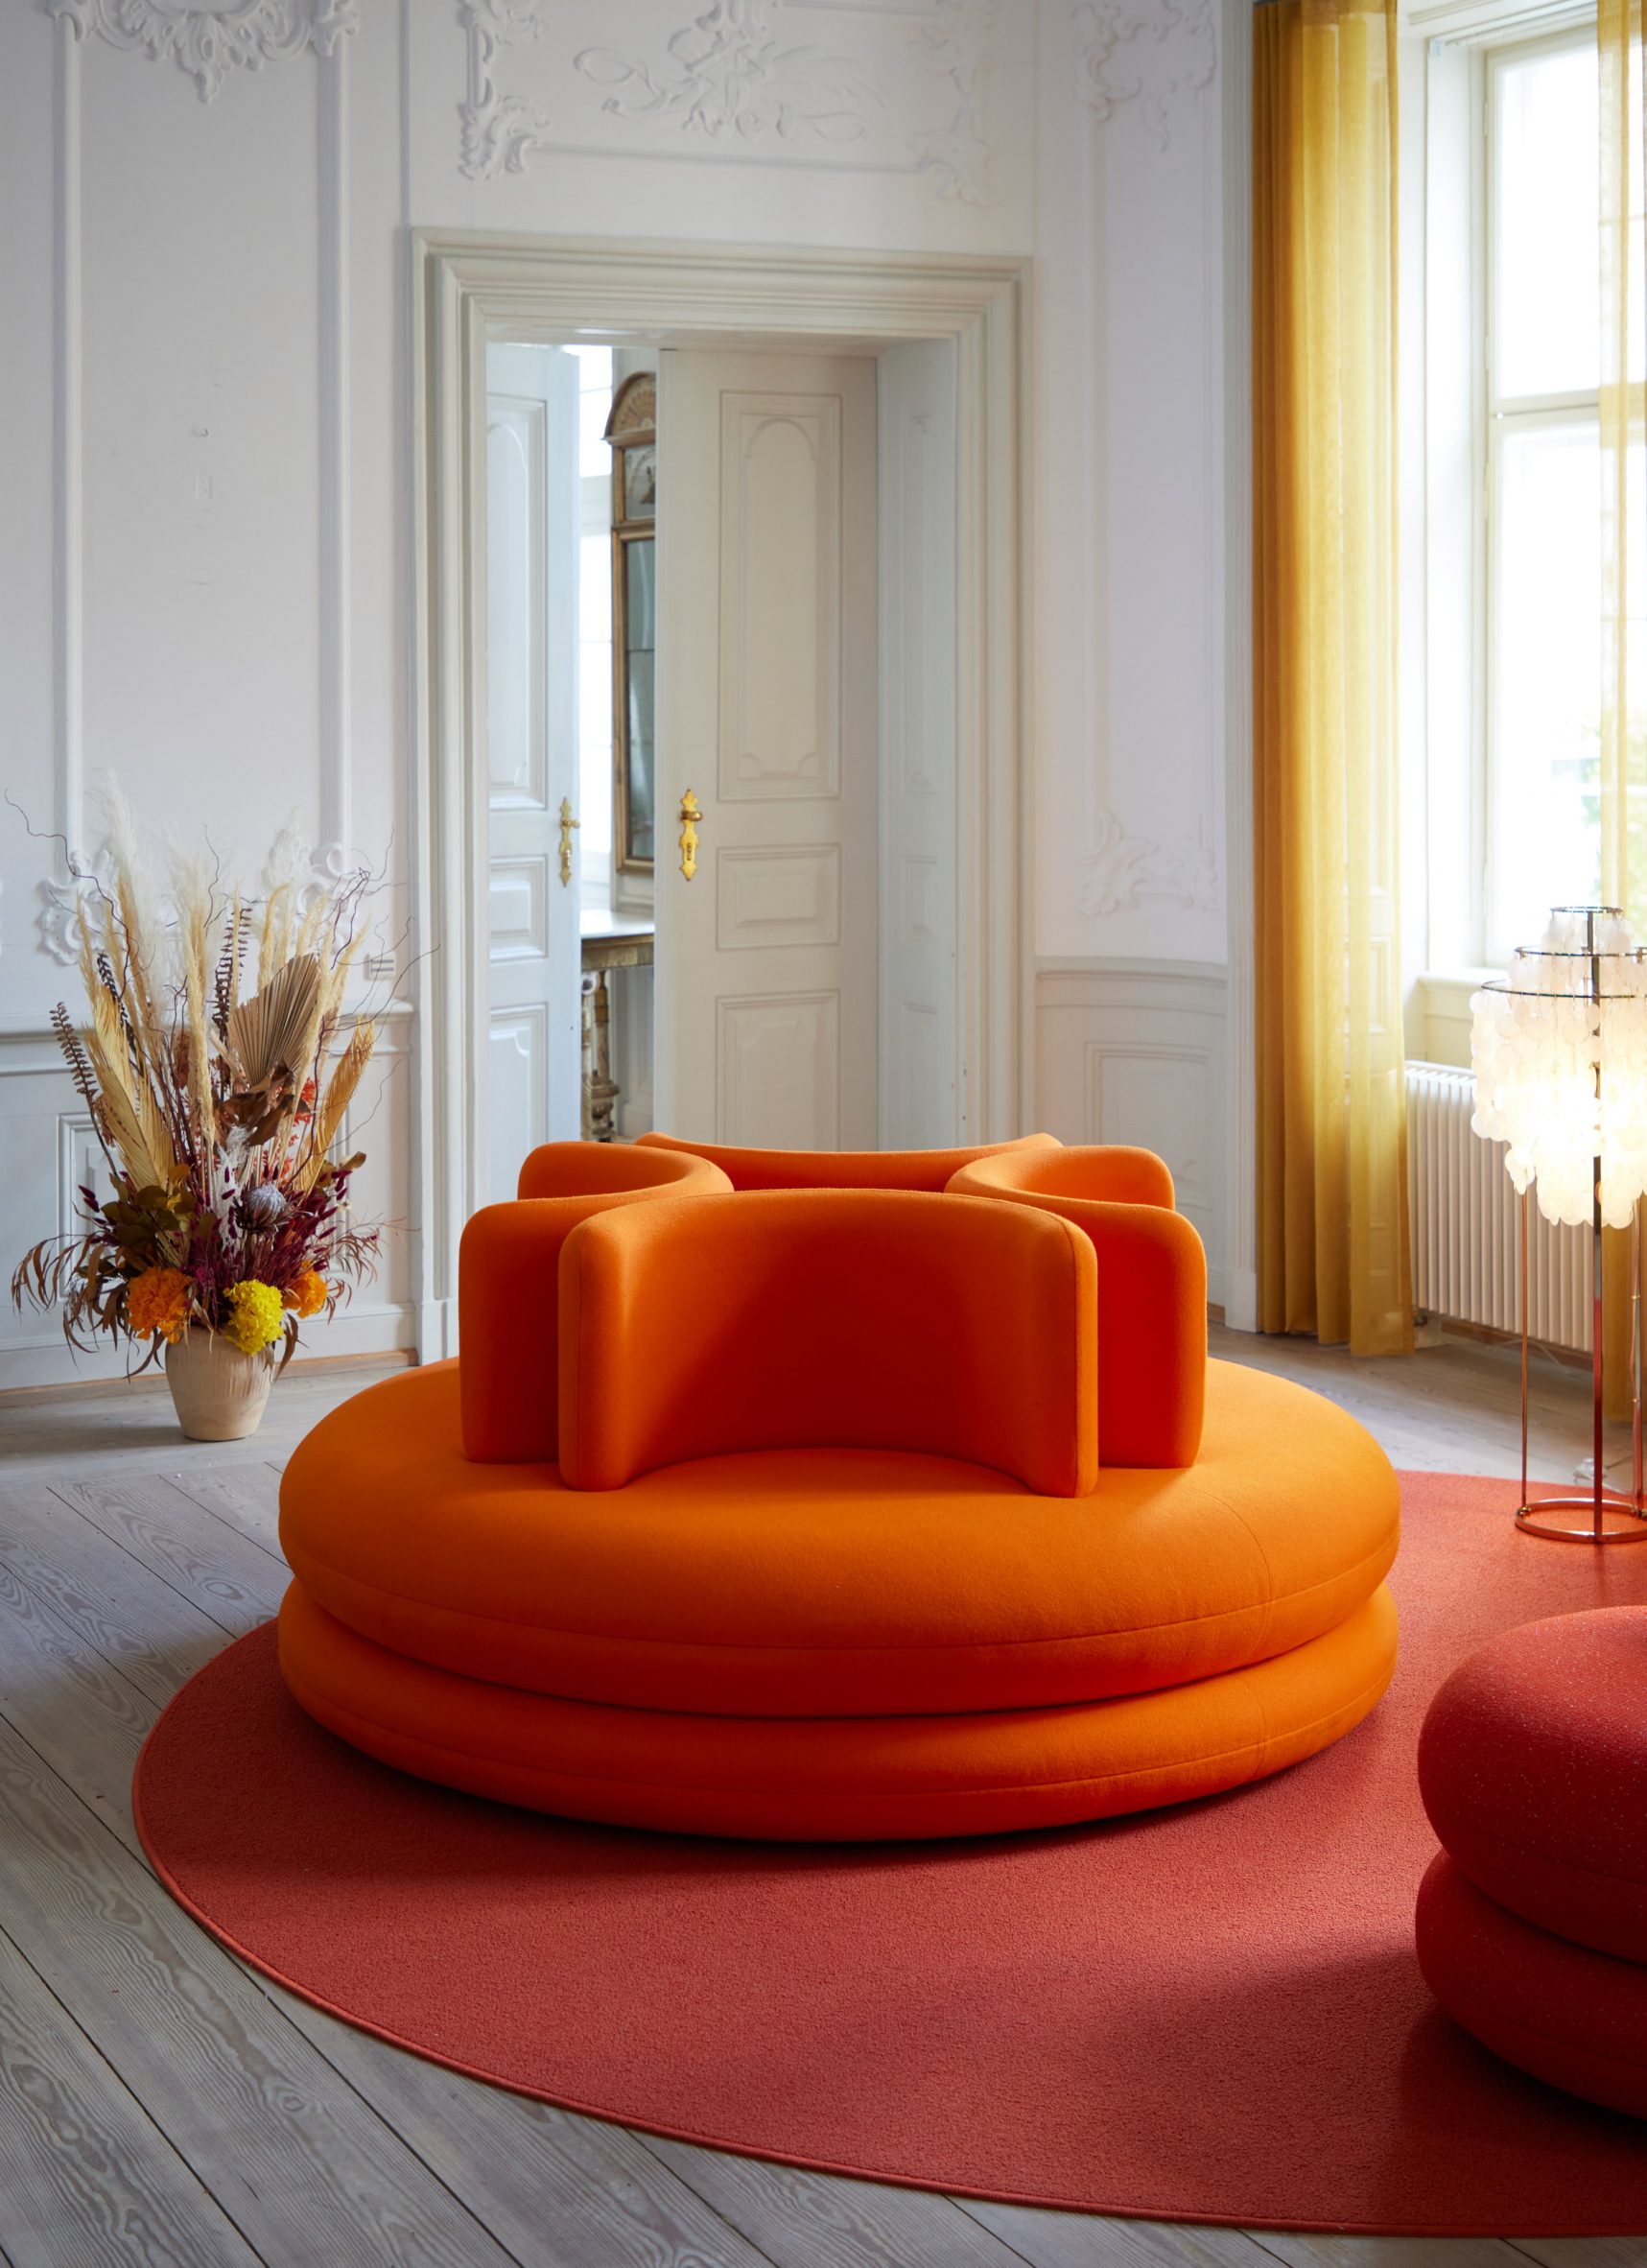 La Manufacture-Paris e Table with Pouffes Designed by